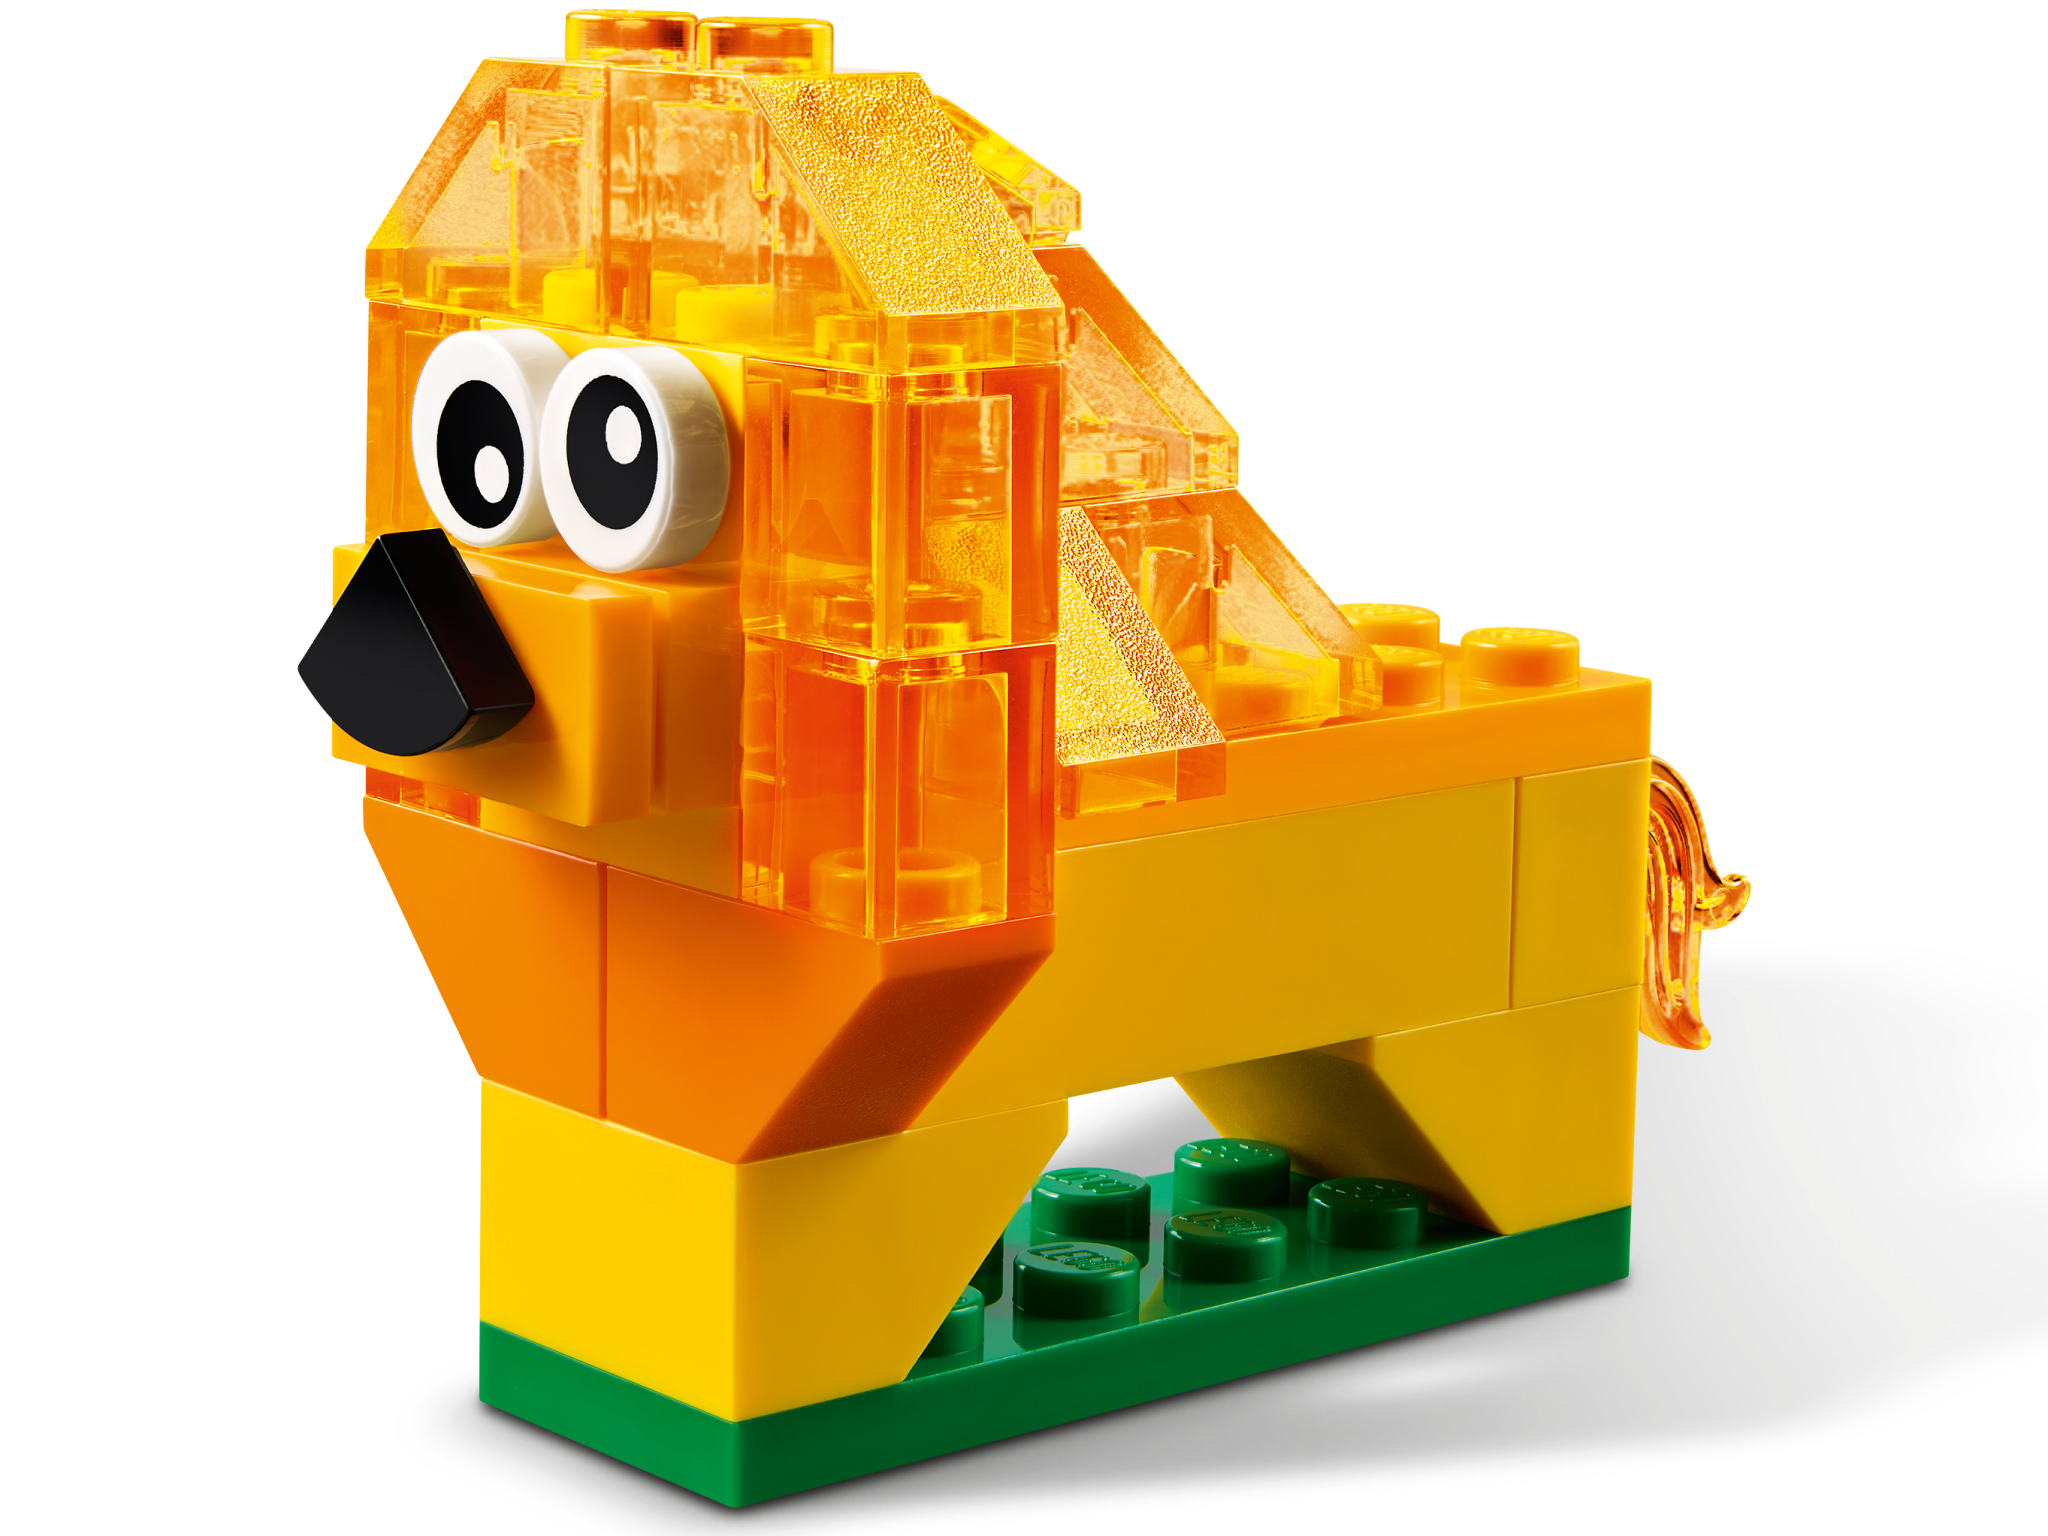 Lego Lego 11013 Classic - Briques transparentes créatives